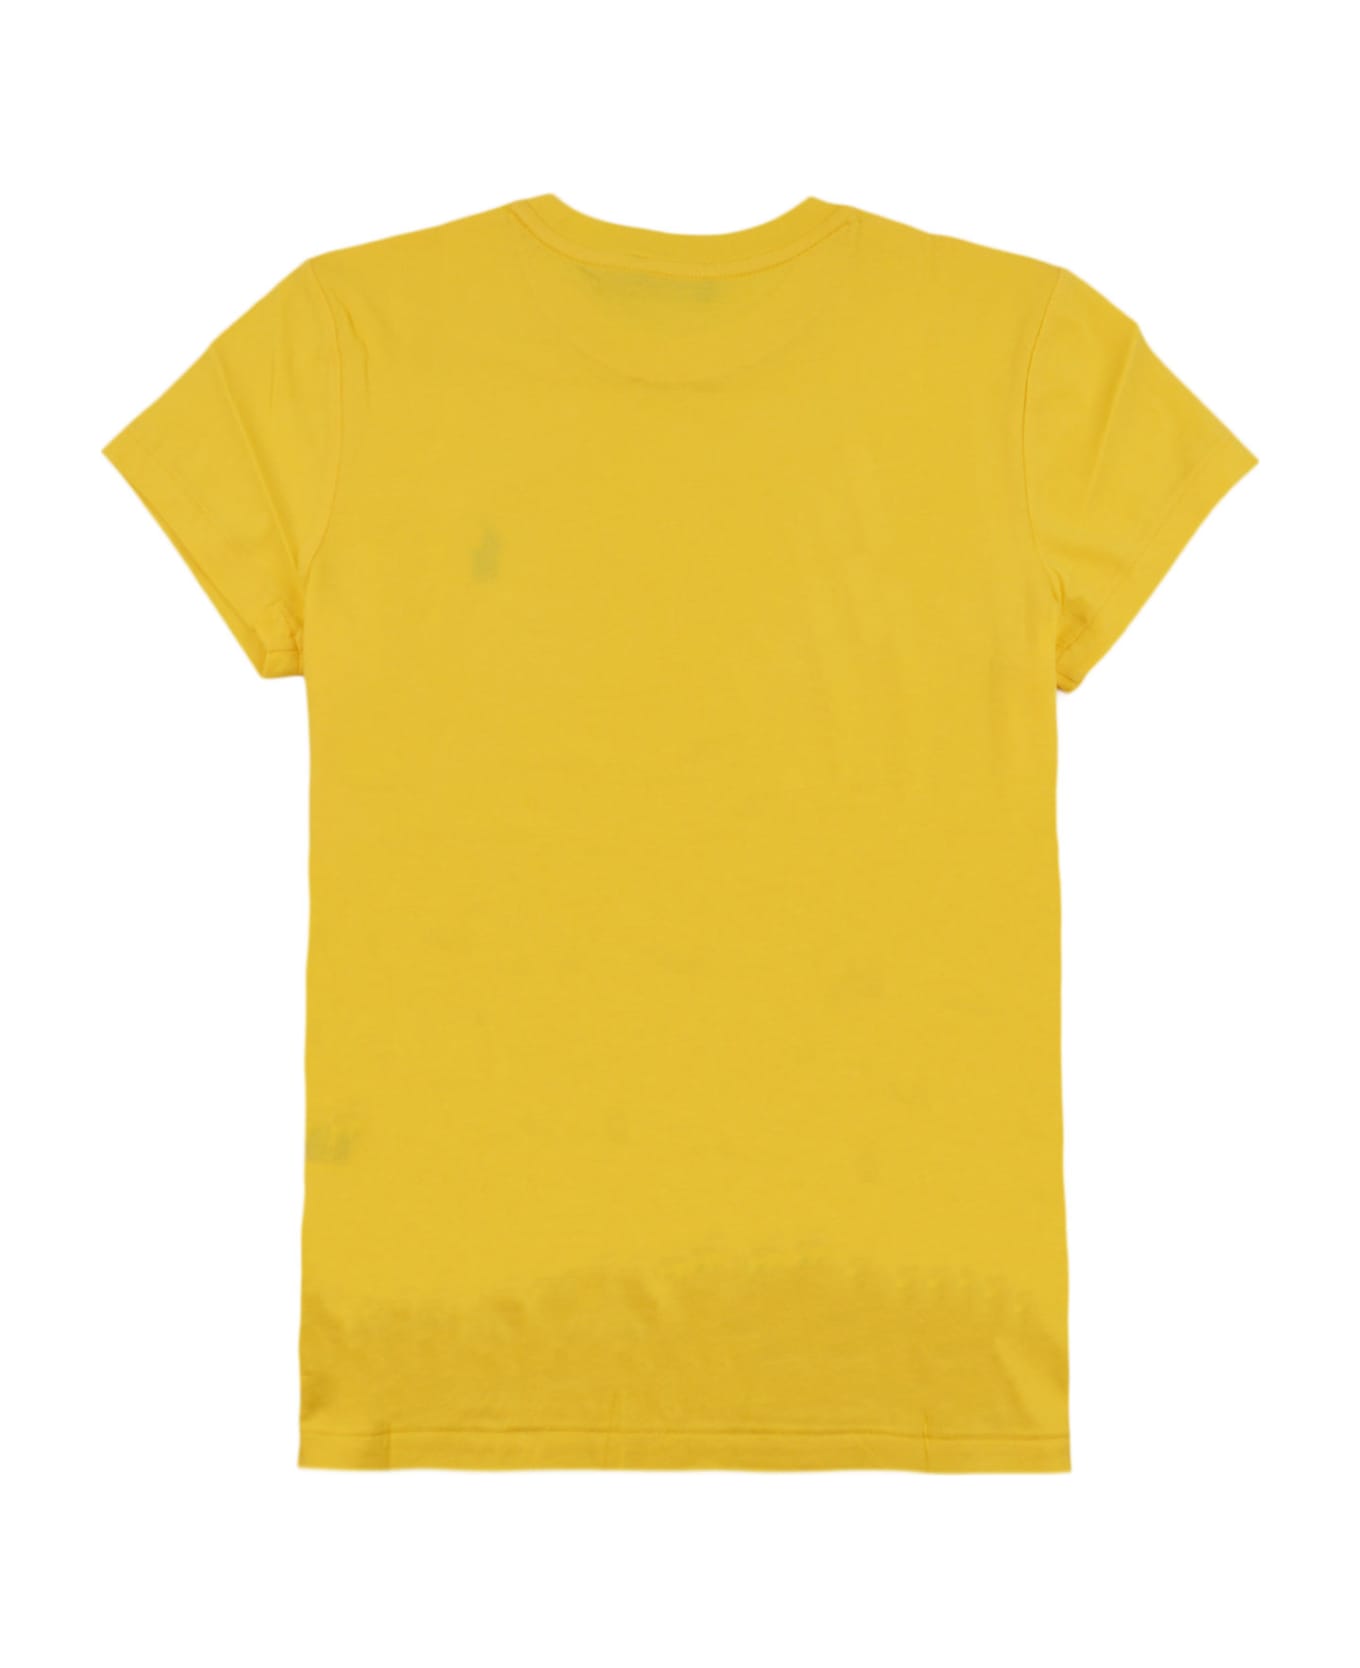 Ralph Lauren T-shirt - Sunfish Yellow